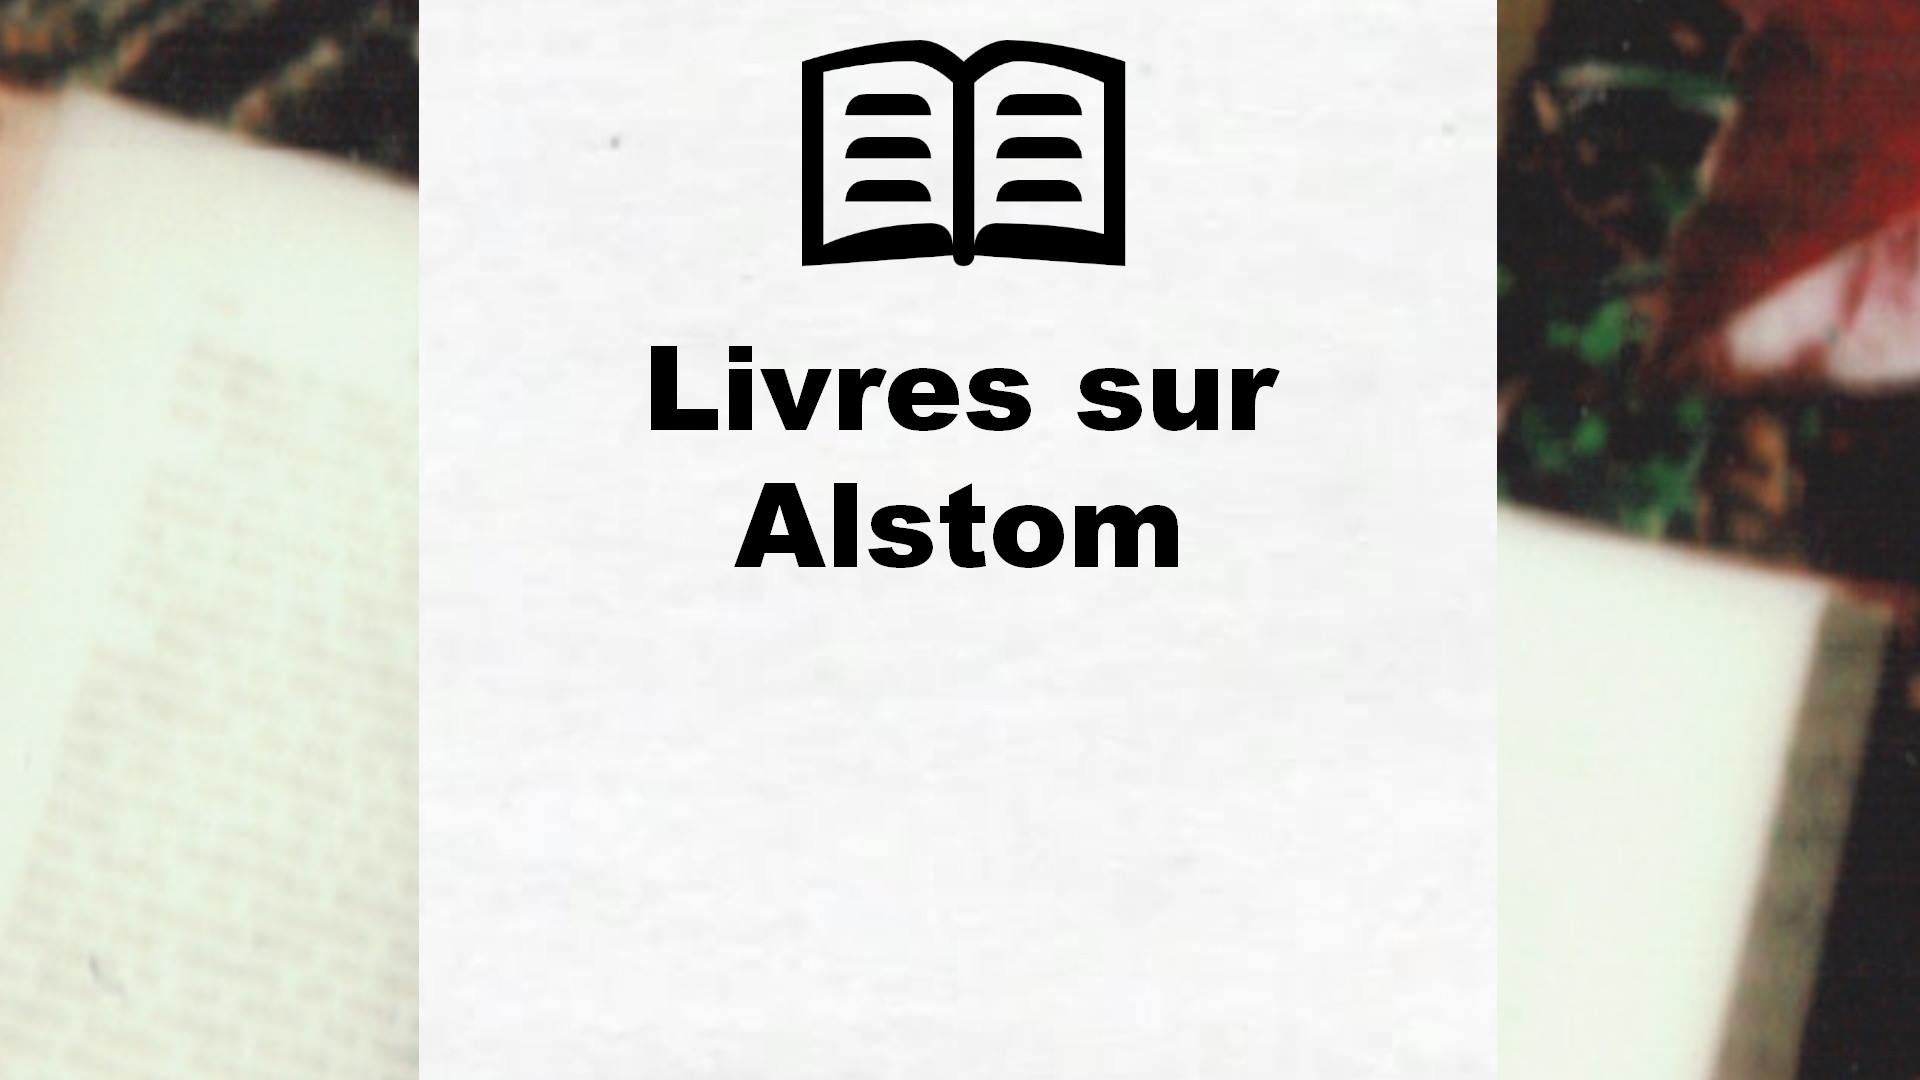 Livres sur Alstom